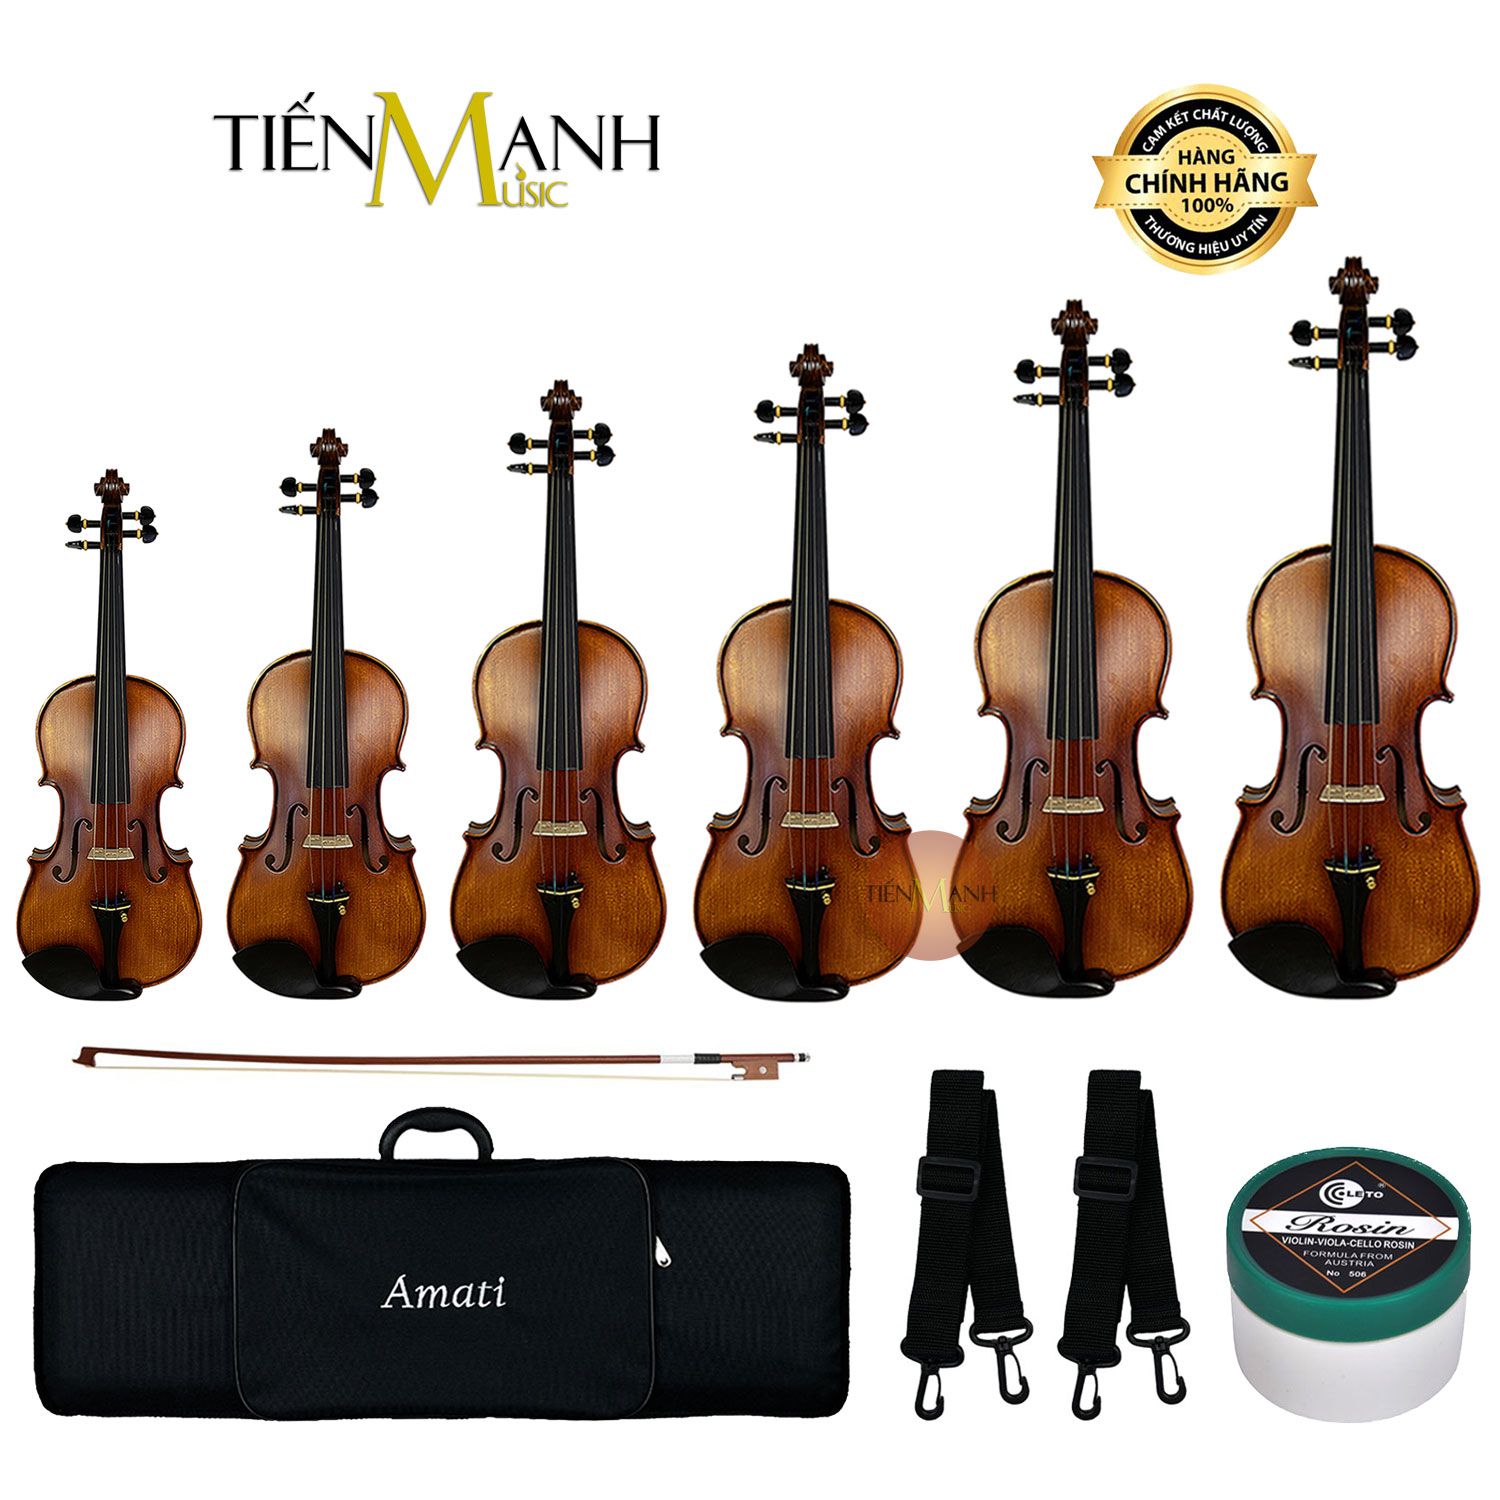 Đàn Violin Amati Vân Vẽ VM118 Size 4-4, 3-4, 1-2, 1-4, 1-8, 1-10, 1-16 - Vĩ Cầm VM118Y Vi-ô-lông Violon